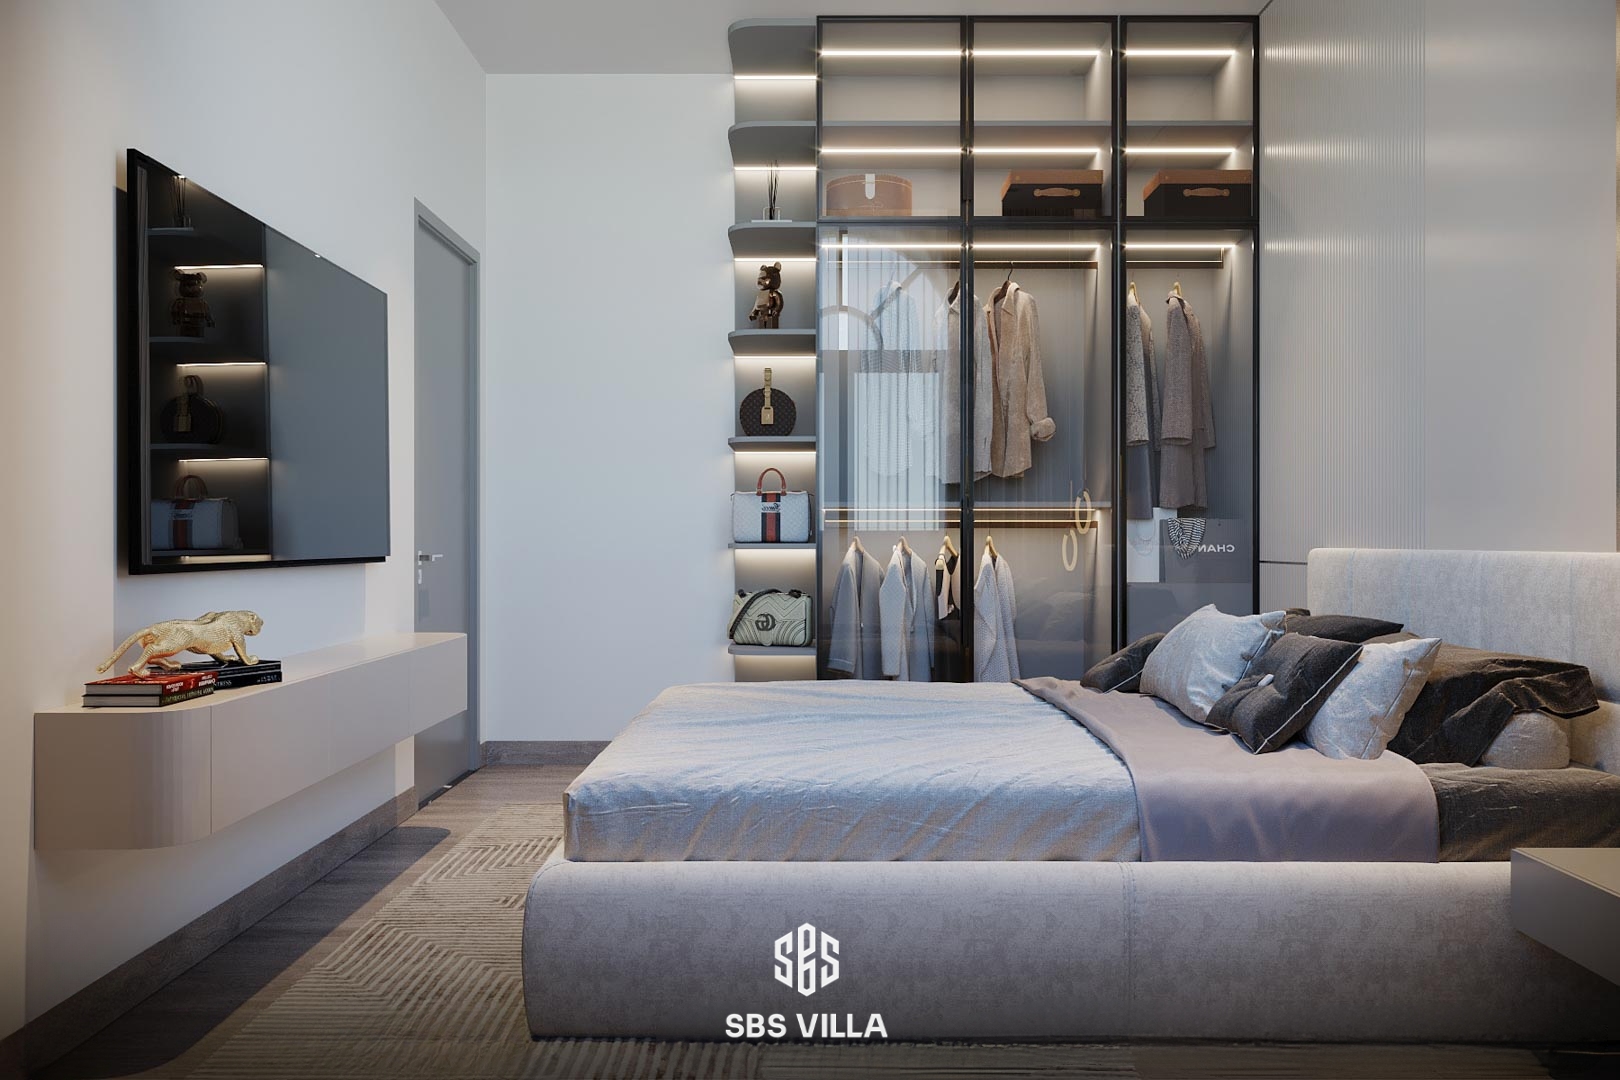 Không gian phòng ngủ kết hợp giữa phong cách hiện đại và tối giản